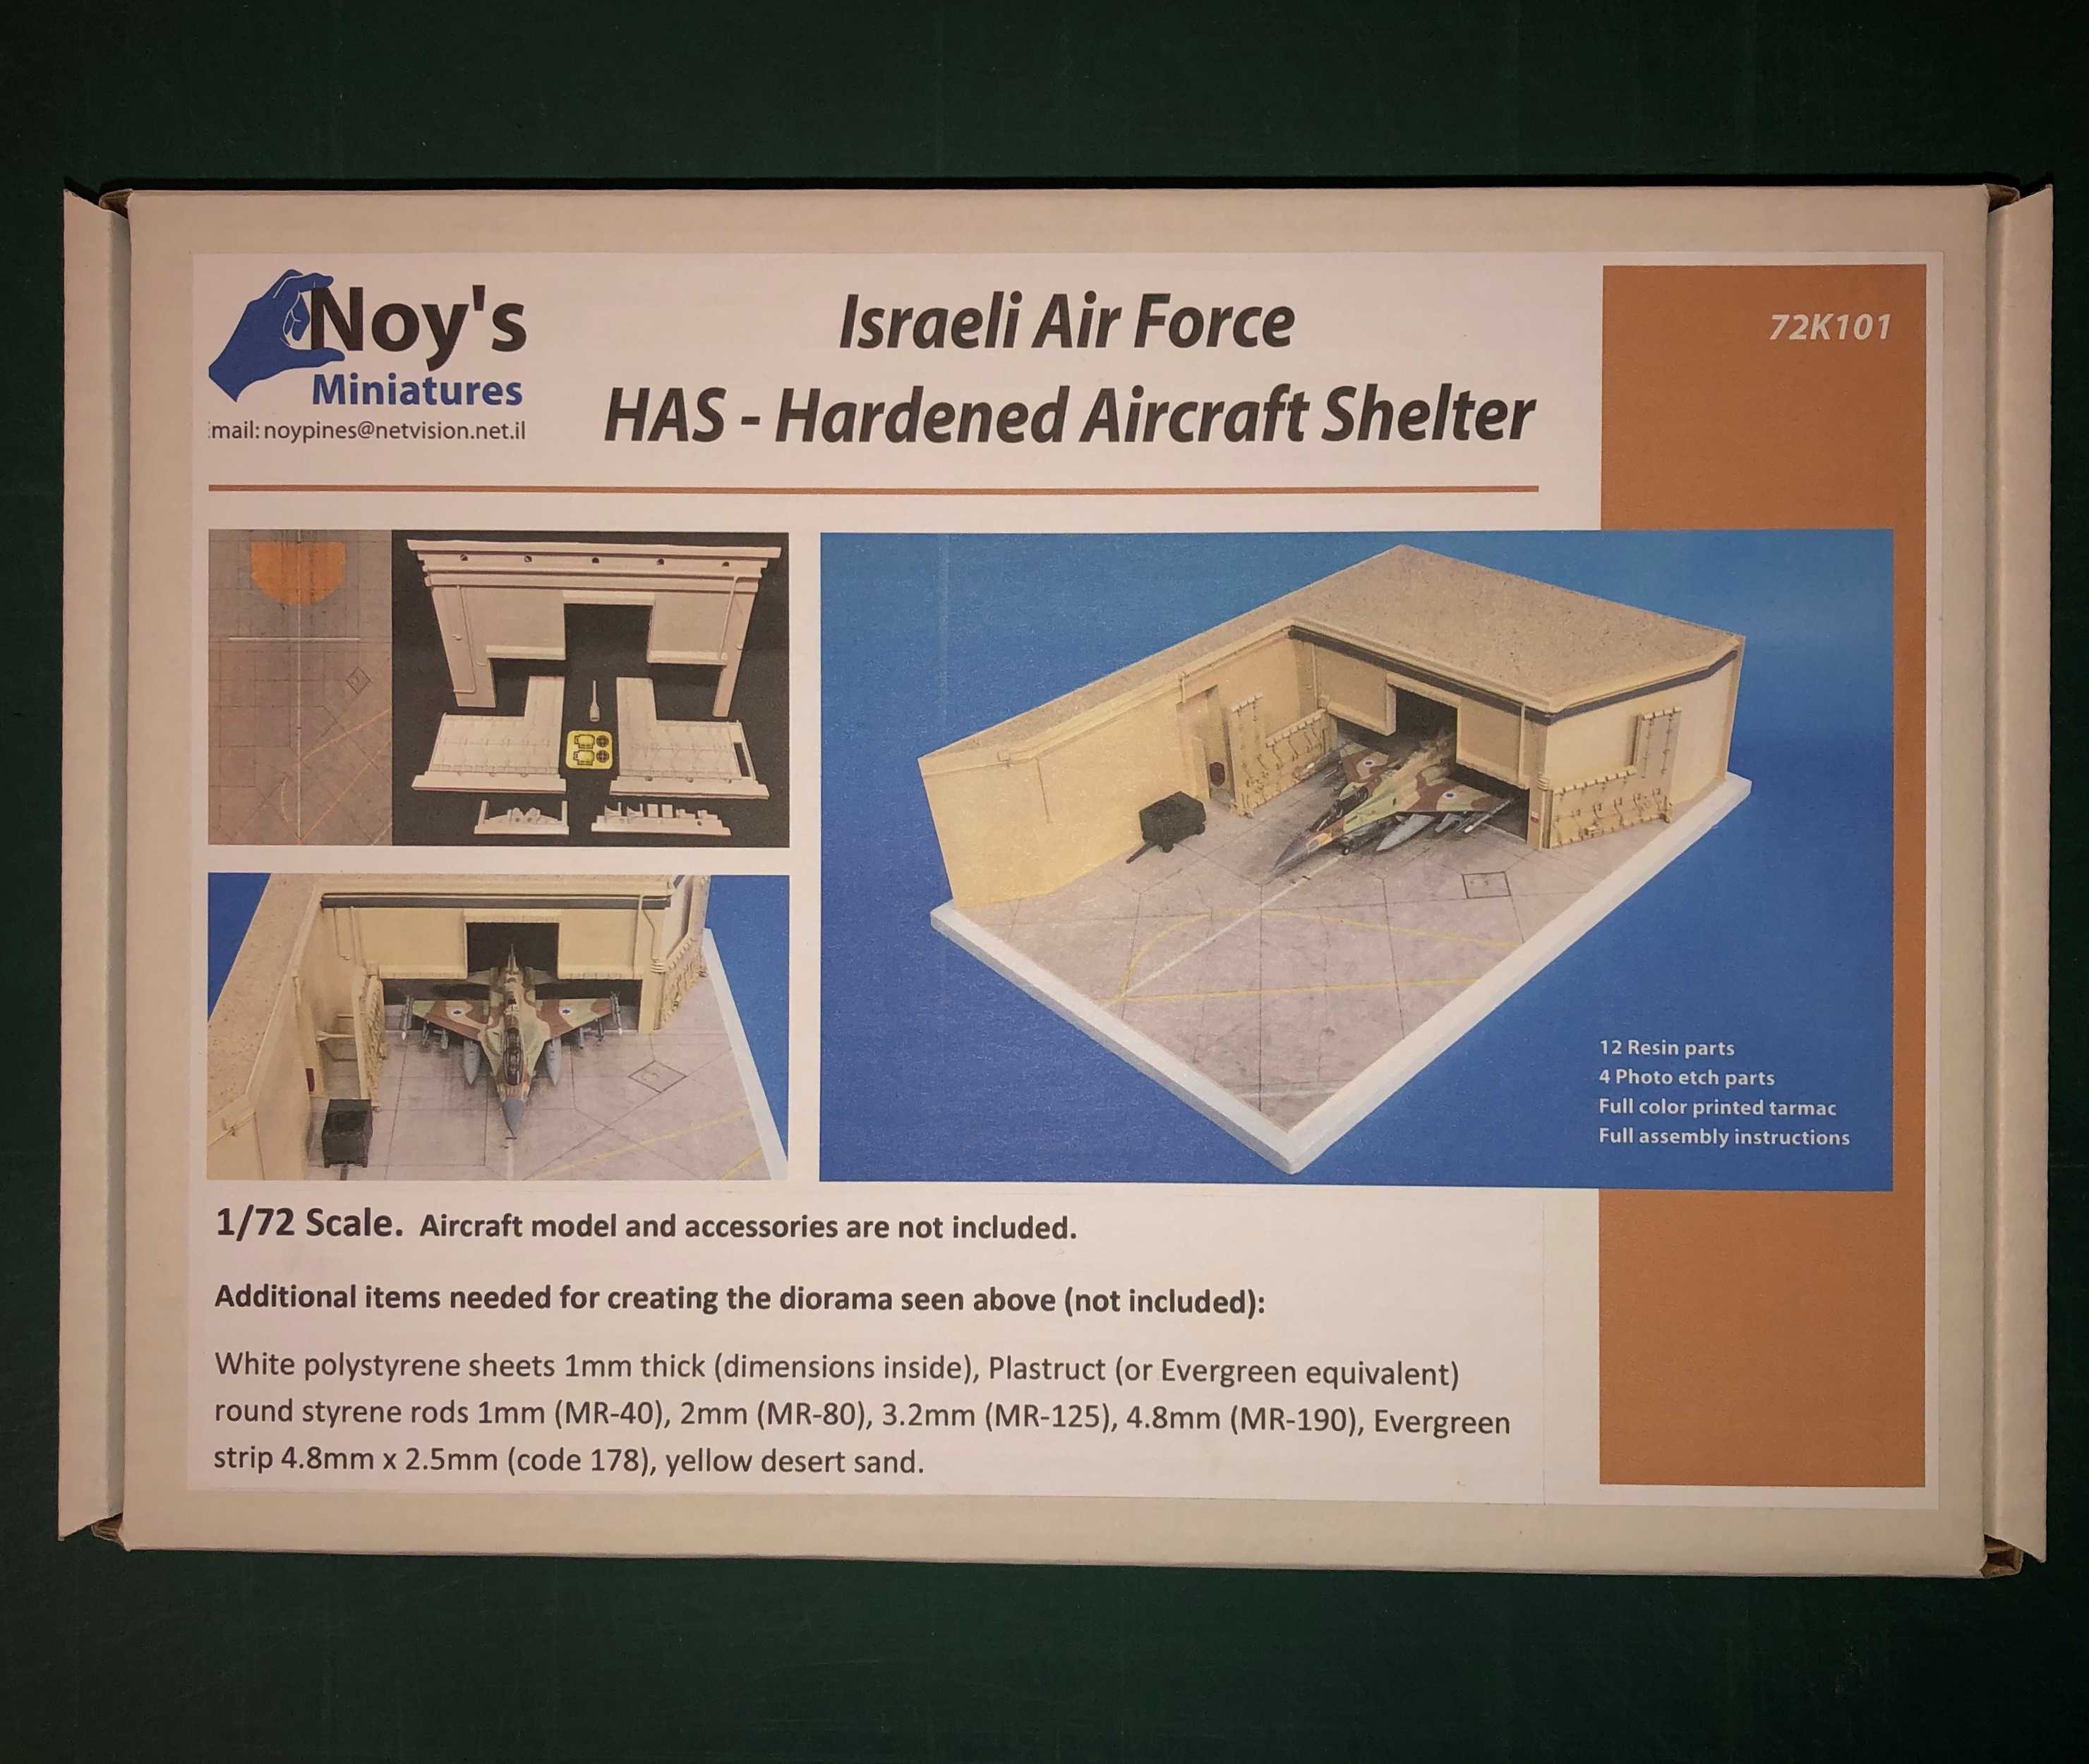  Noy's Miniatures L’armée de l’air israélienne utilise depuis de nombr